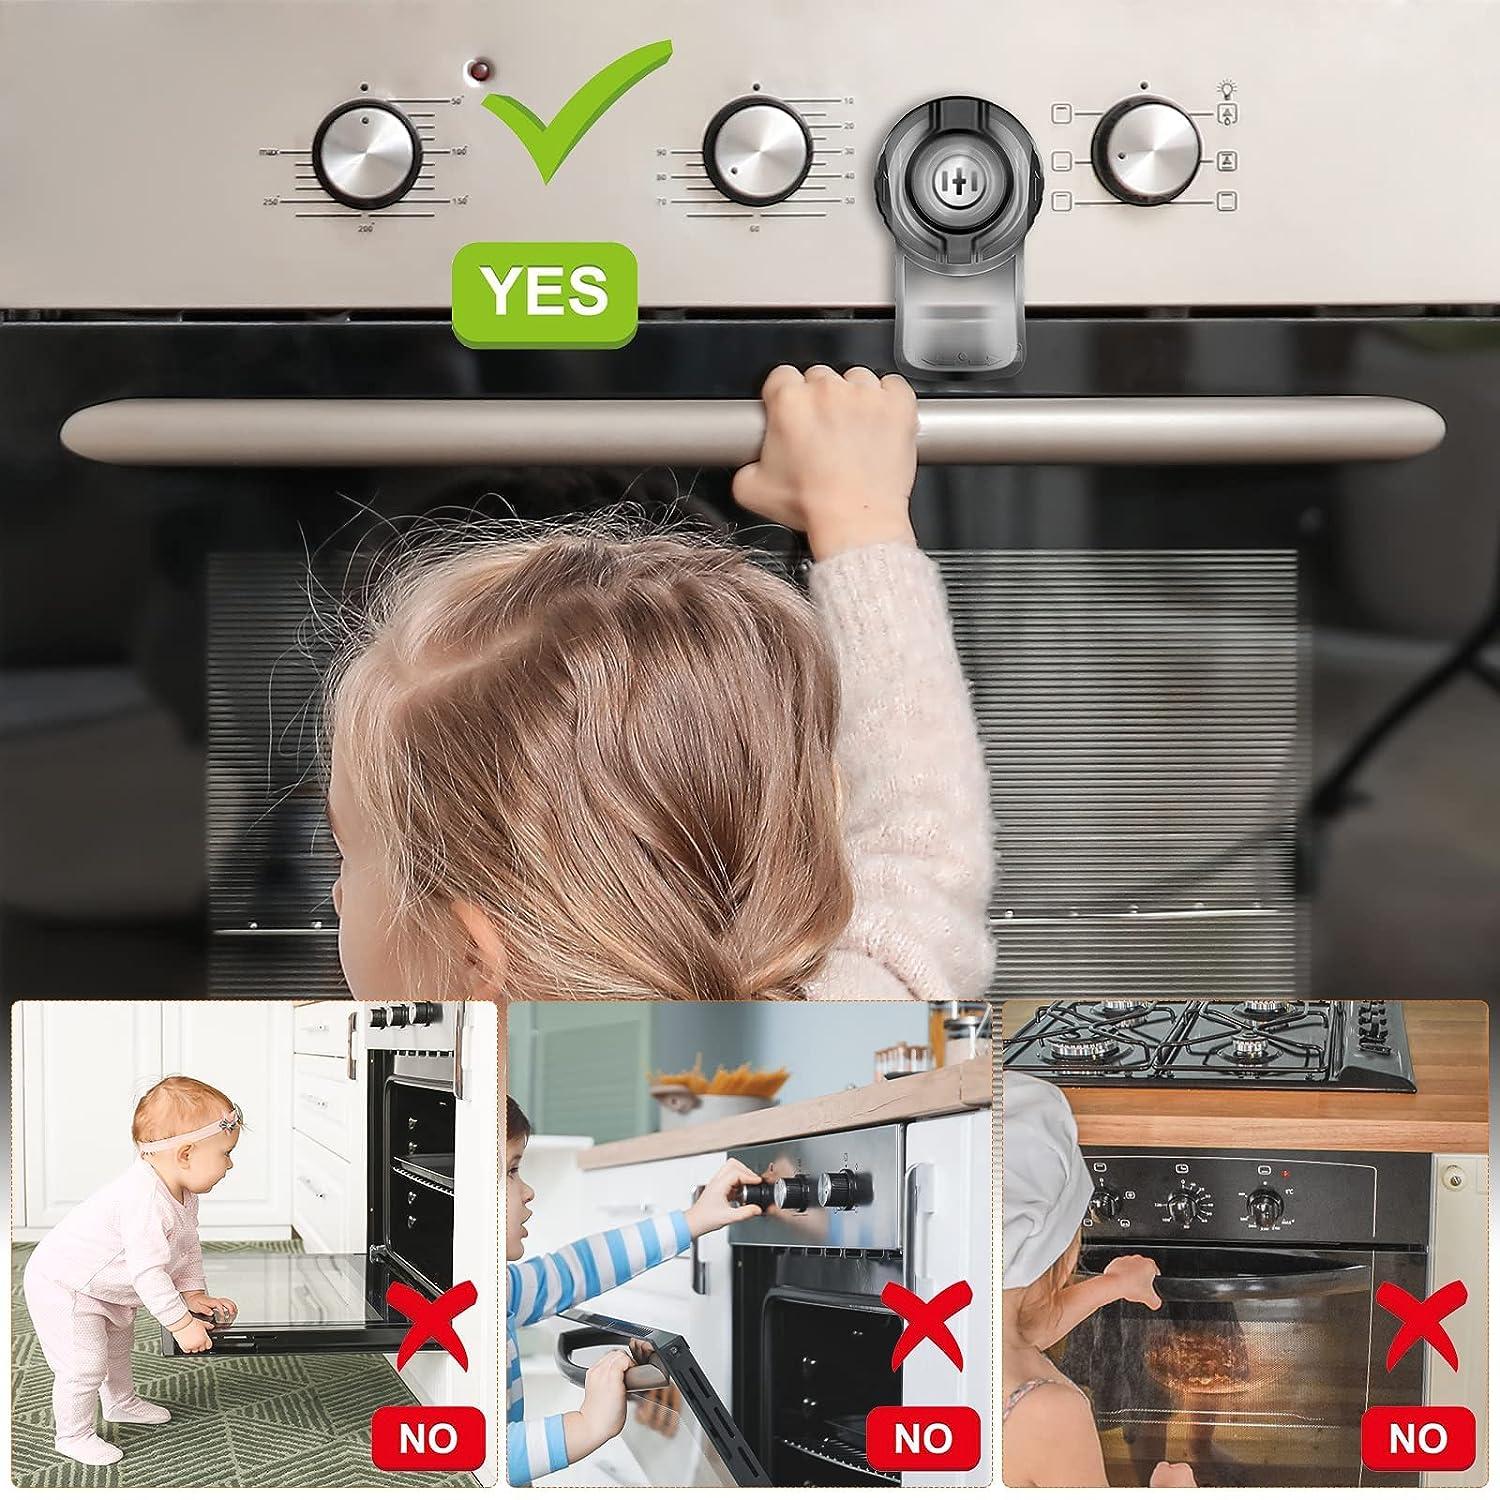 Homemaxs 2pcs Childproof Oven Door Lock Baby Safety Oven Lock Kitchen Baby Safety Lock, Size: 9.5x5.3cm